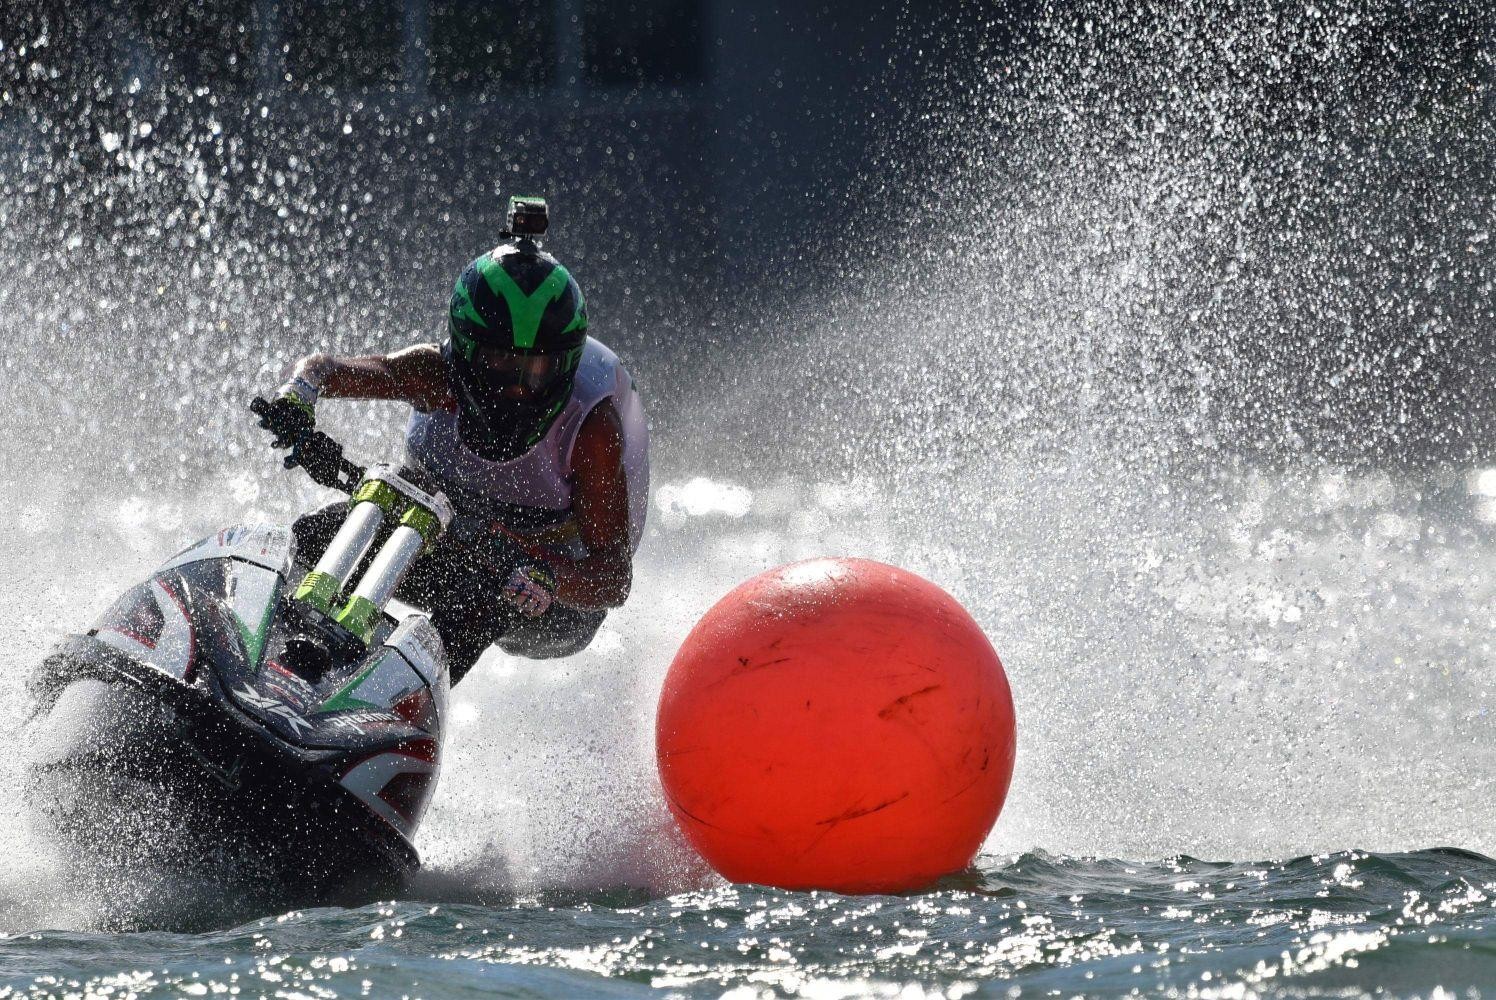 Lo scorso fine settimana all’Idroscalo è andato in scena il penultimo round del Campionato Italiano Jet Ski con ottimi risultati per il team Dreams Racing